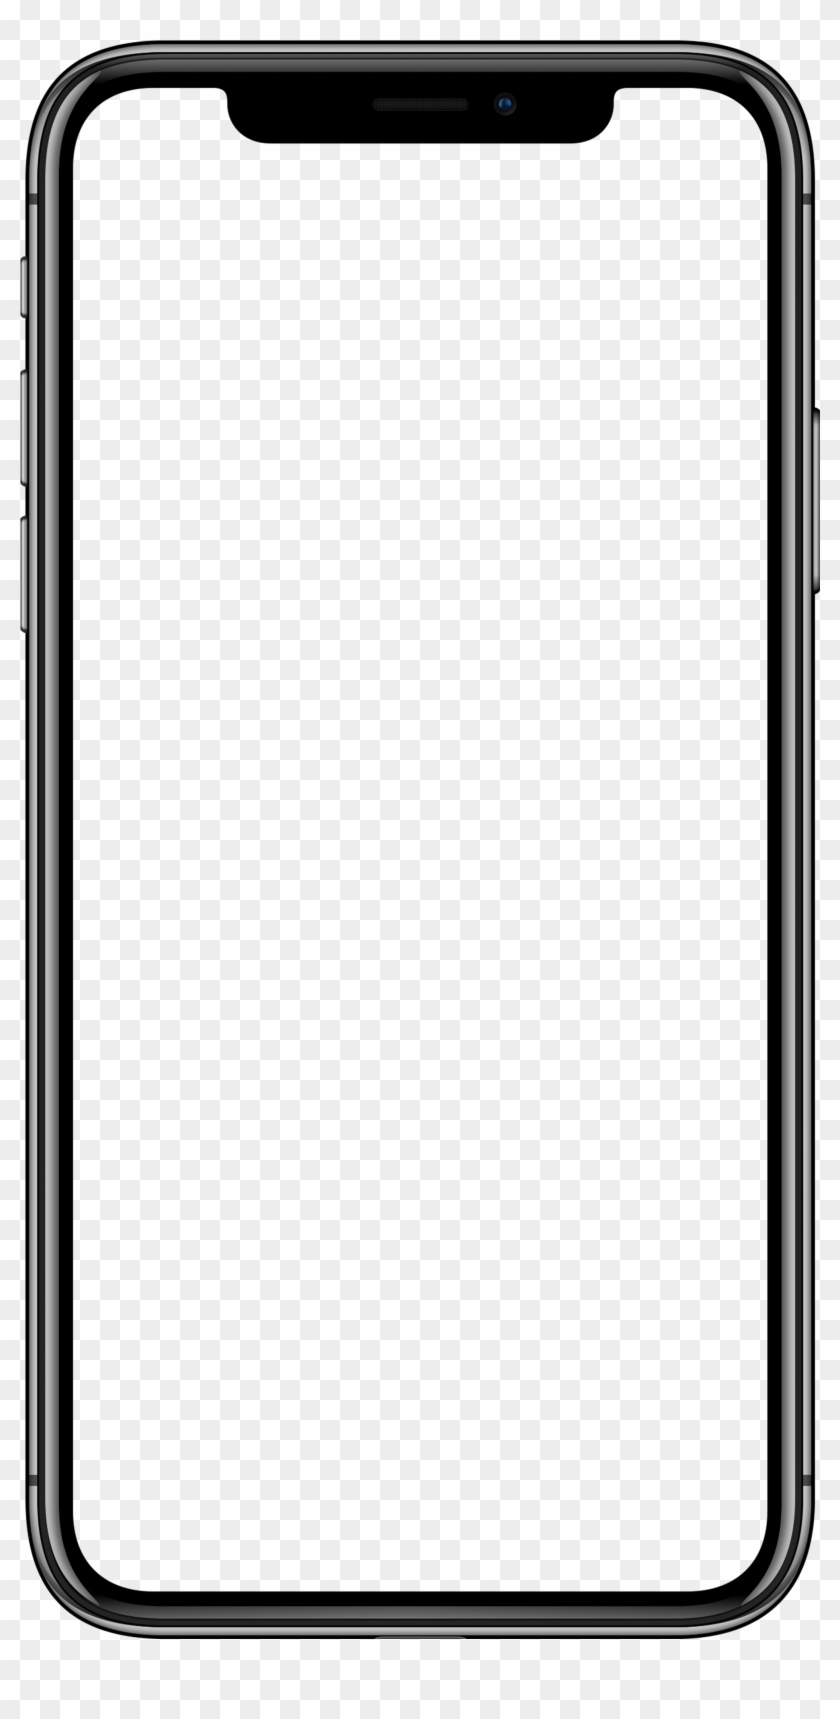 Mẫu Iphone X Png Mockup rất đẹp và chuyên nghiệp. Nhấp vào hình ảnh để xem và bạn sẽ thấy rằng chiếc điện thoại này thật sự đẹp và có phong cách riêng của nó. 